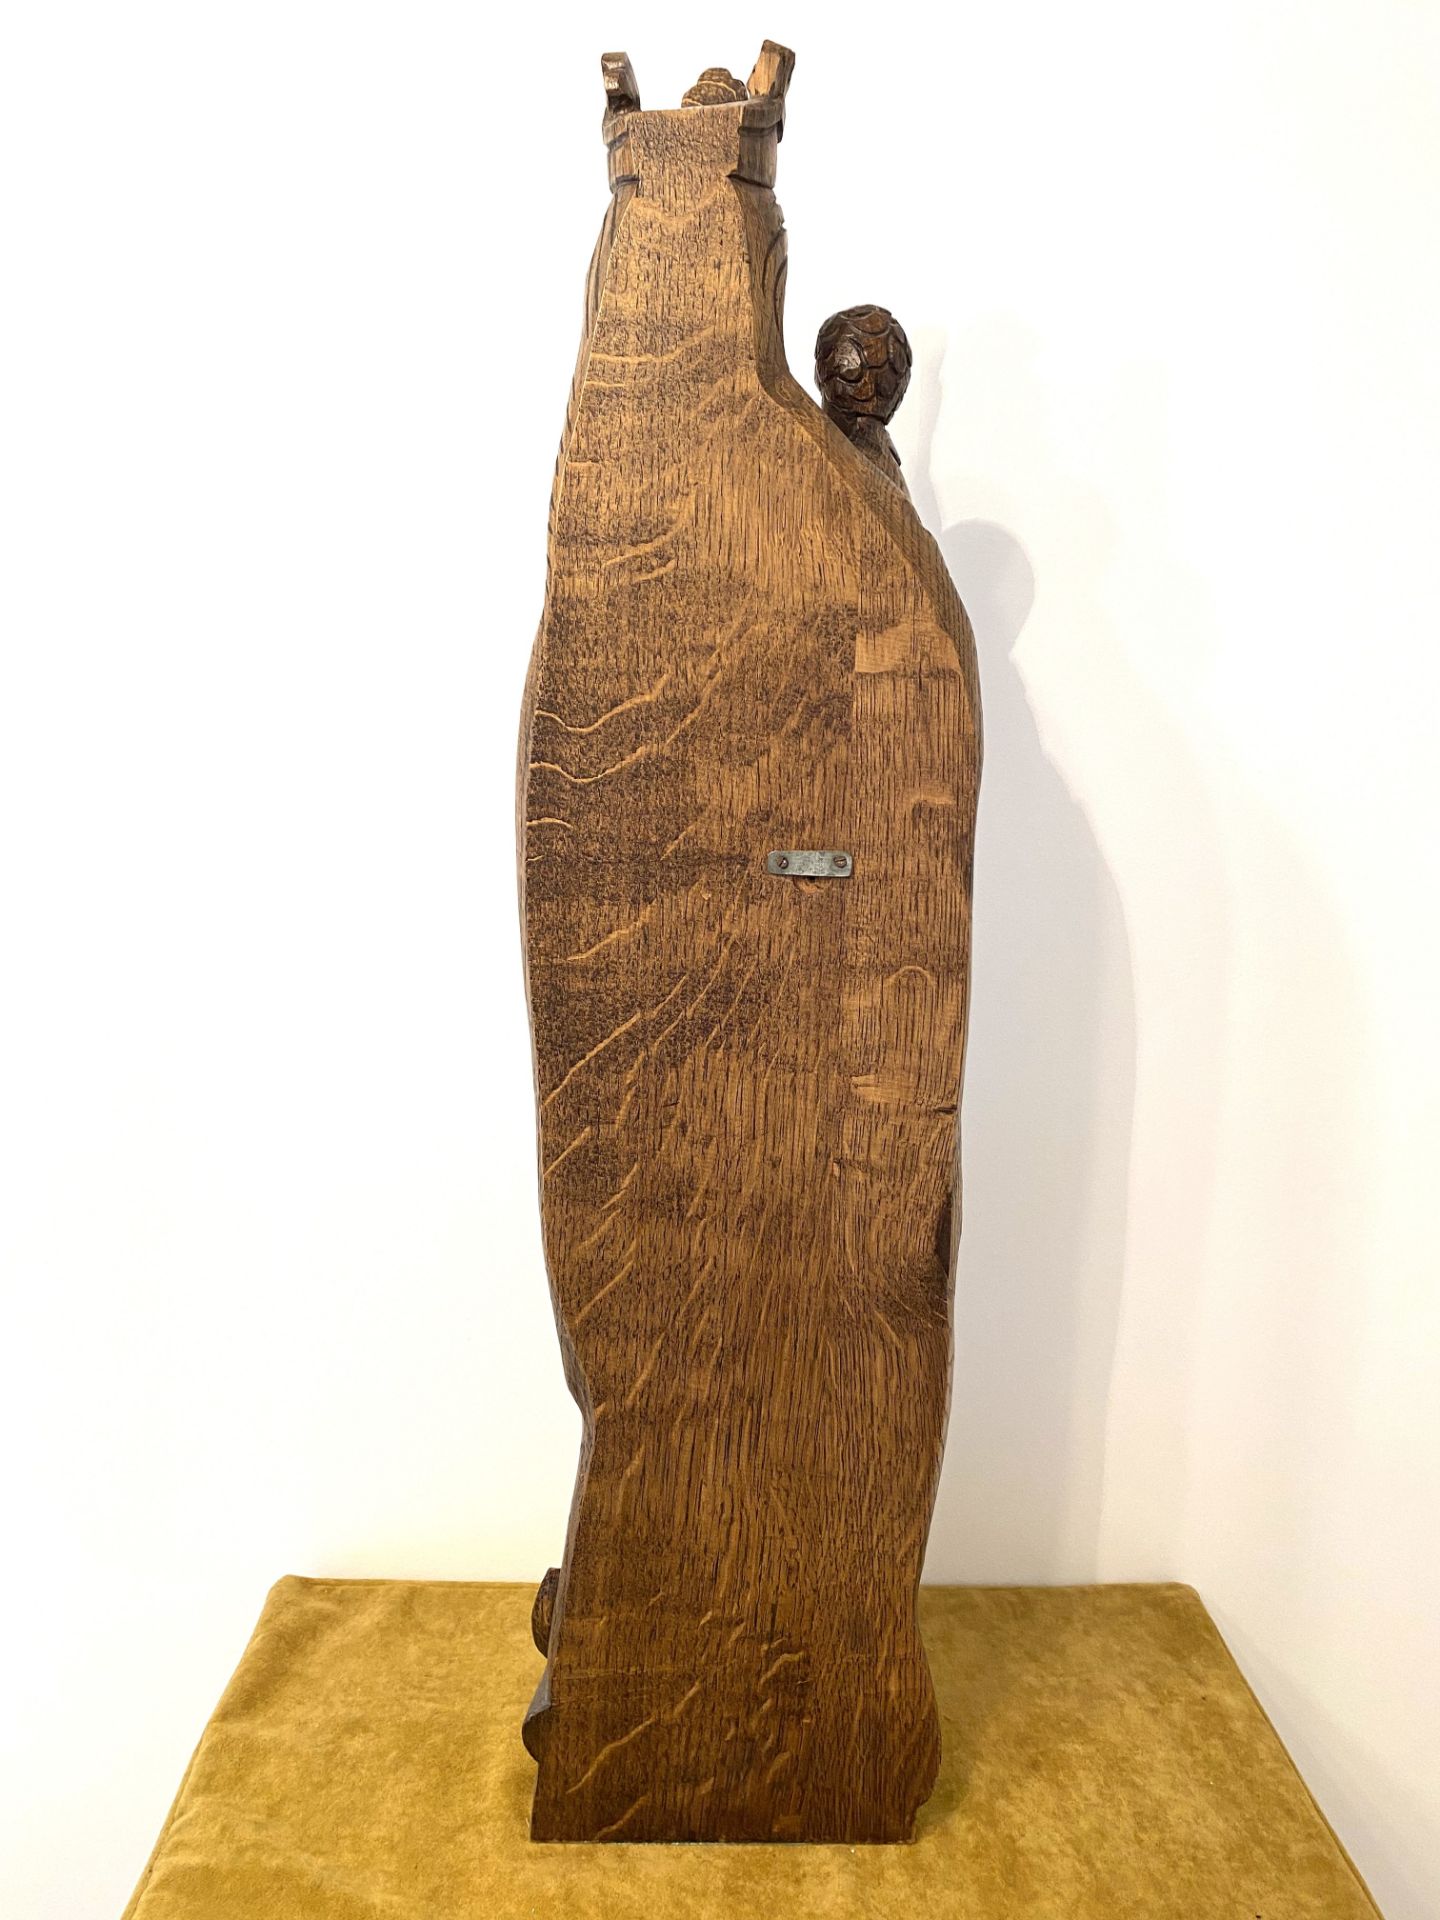 Wooden Sculpture Devotionalia - Image 2 of 5